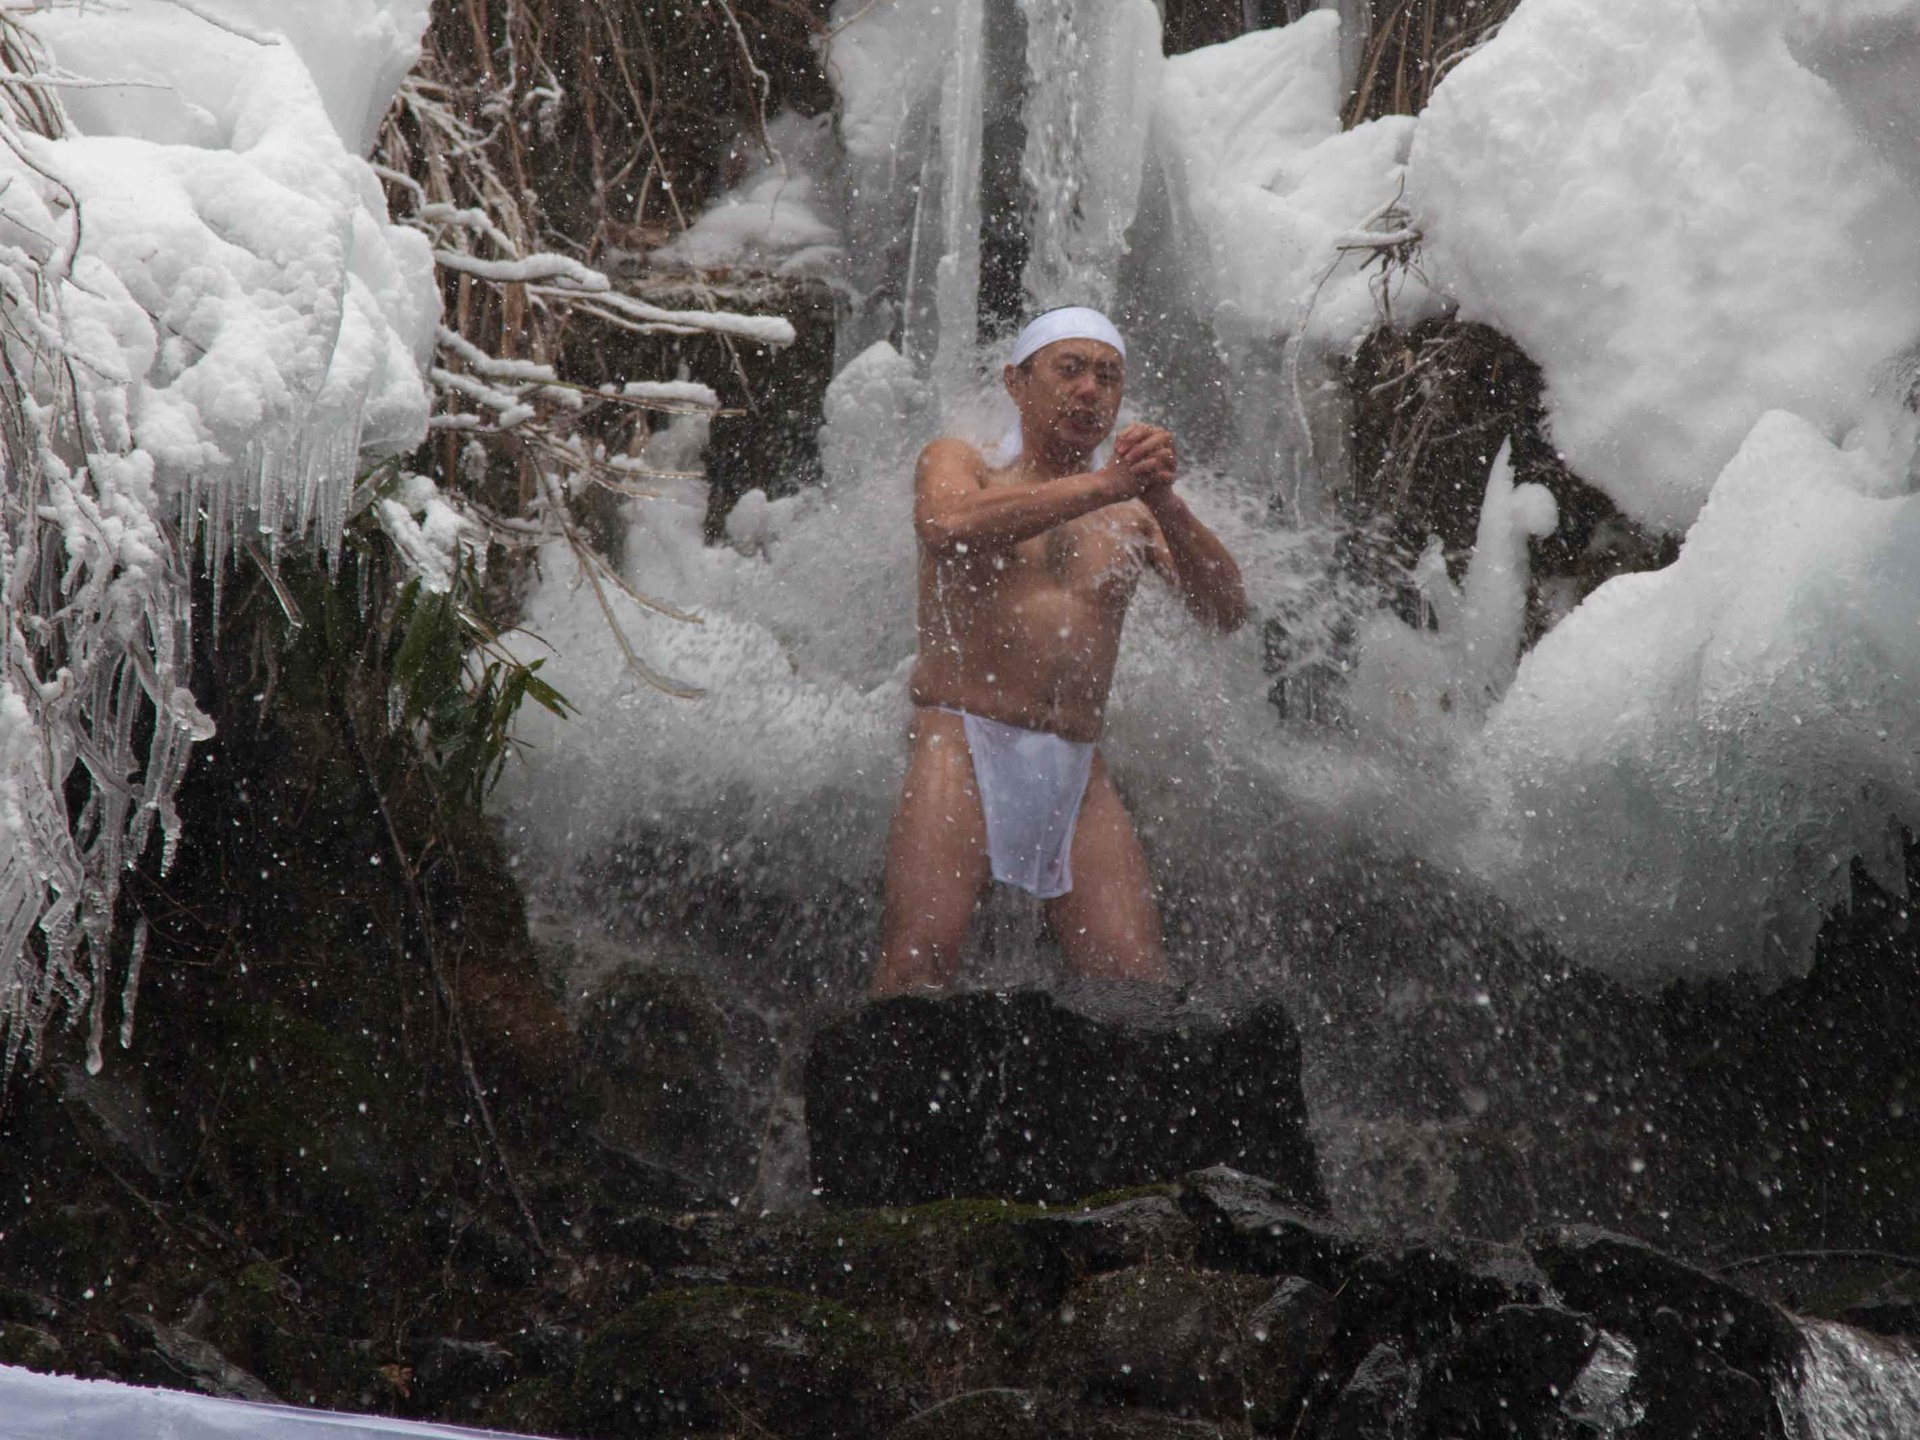 【しおざわ雪譜まつり　パート1】 雪に包まれた山中で、山伏による滝打ちの水行を見る